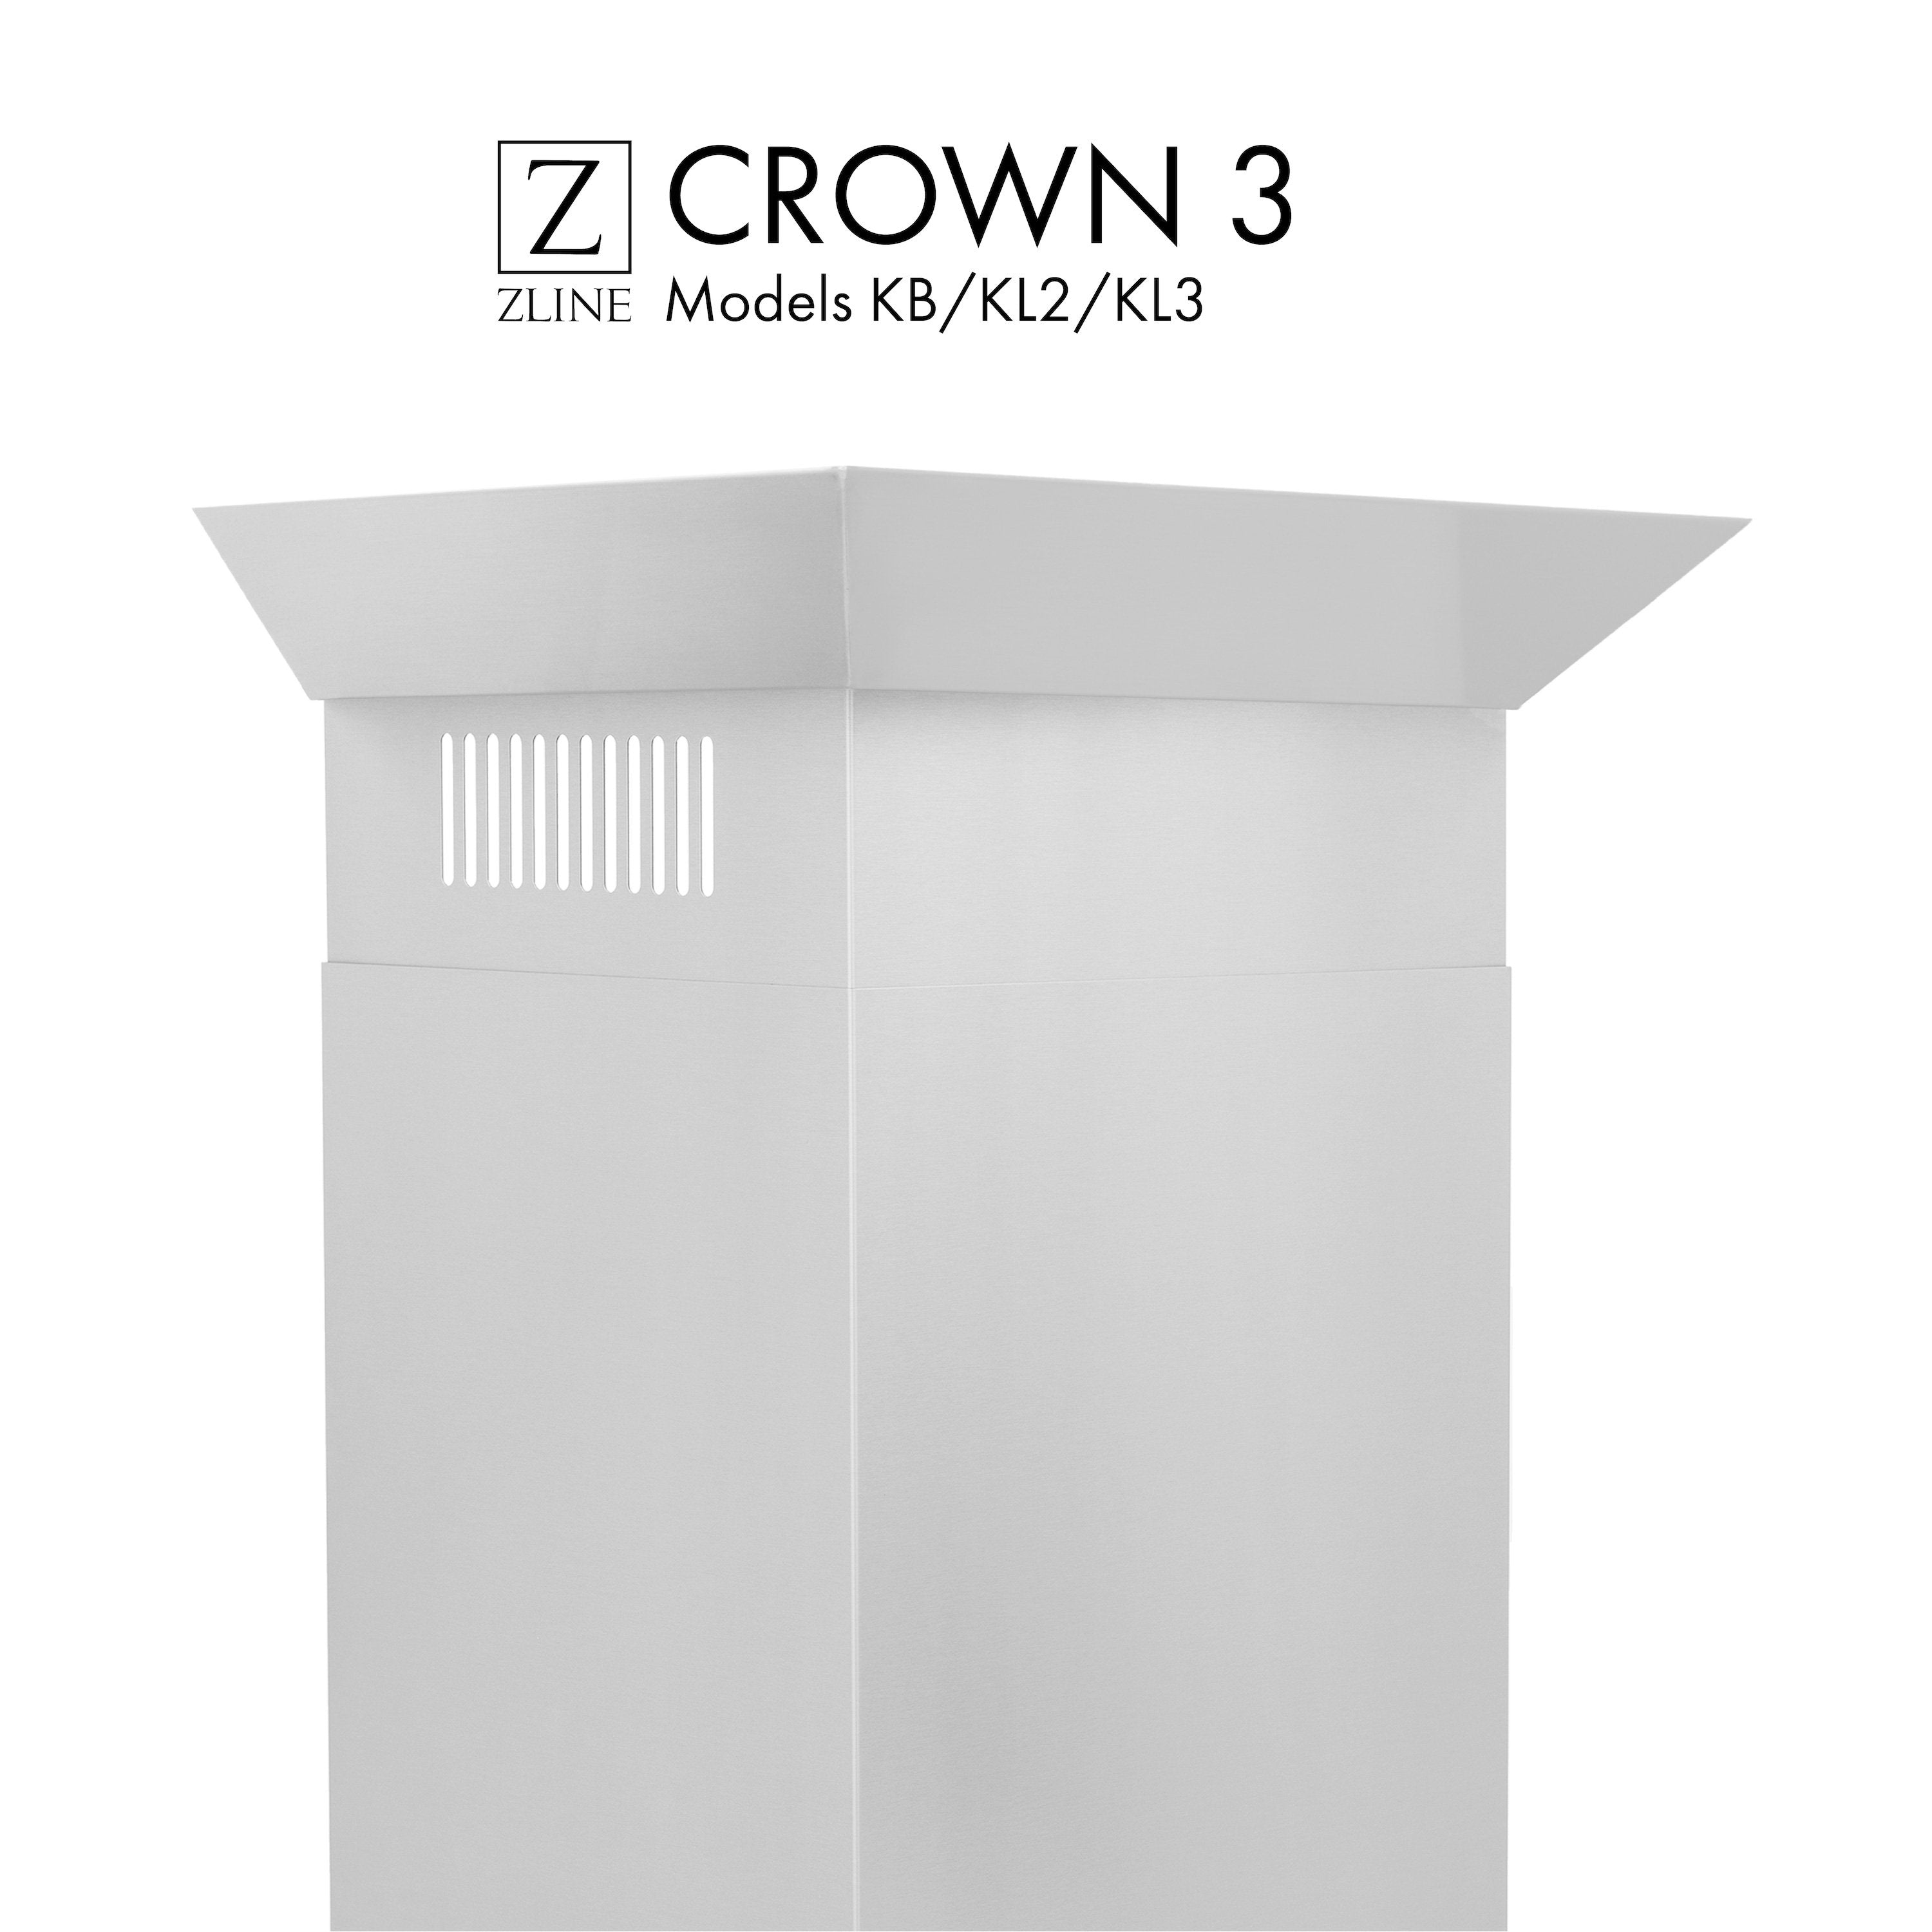 ZLINE Crown Molding Profile 3 for Wall Mount Range Hood (CM3-KB/KL2/KL3)